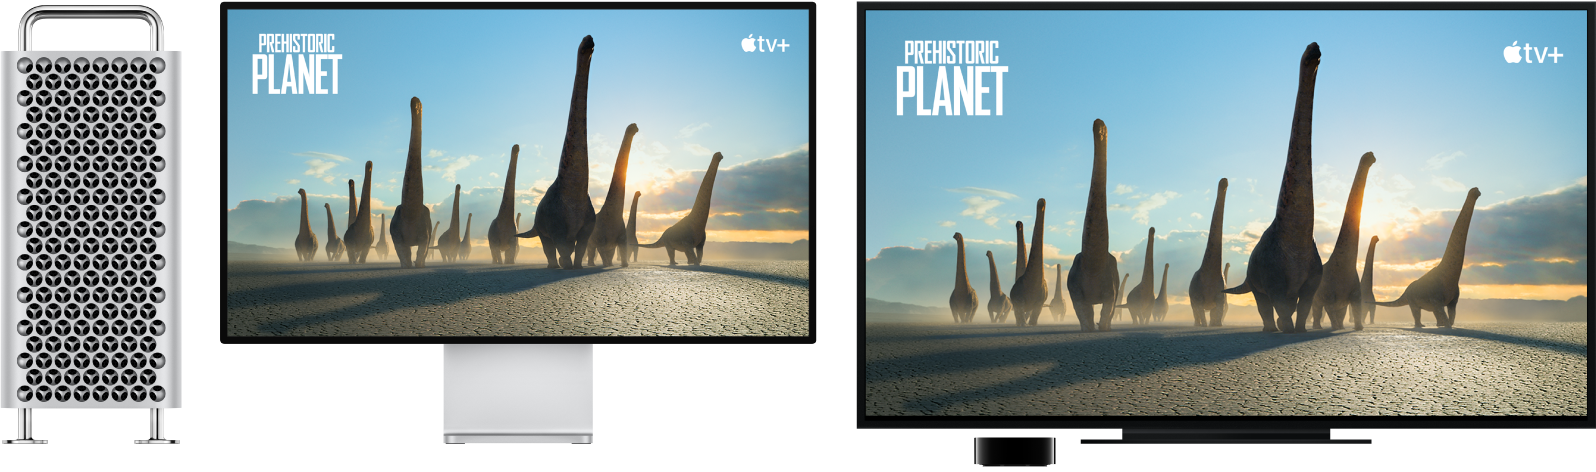 كمبيوتر Mac Pro تم إجراء انعكاس لمحتوياته على تلفزيون HDTV كبير باستخدام Apple TV.